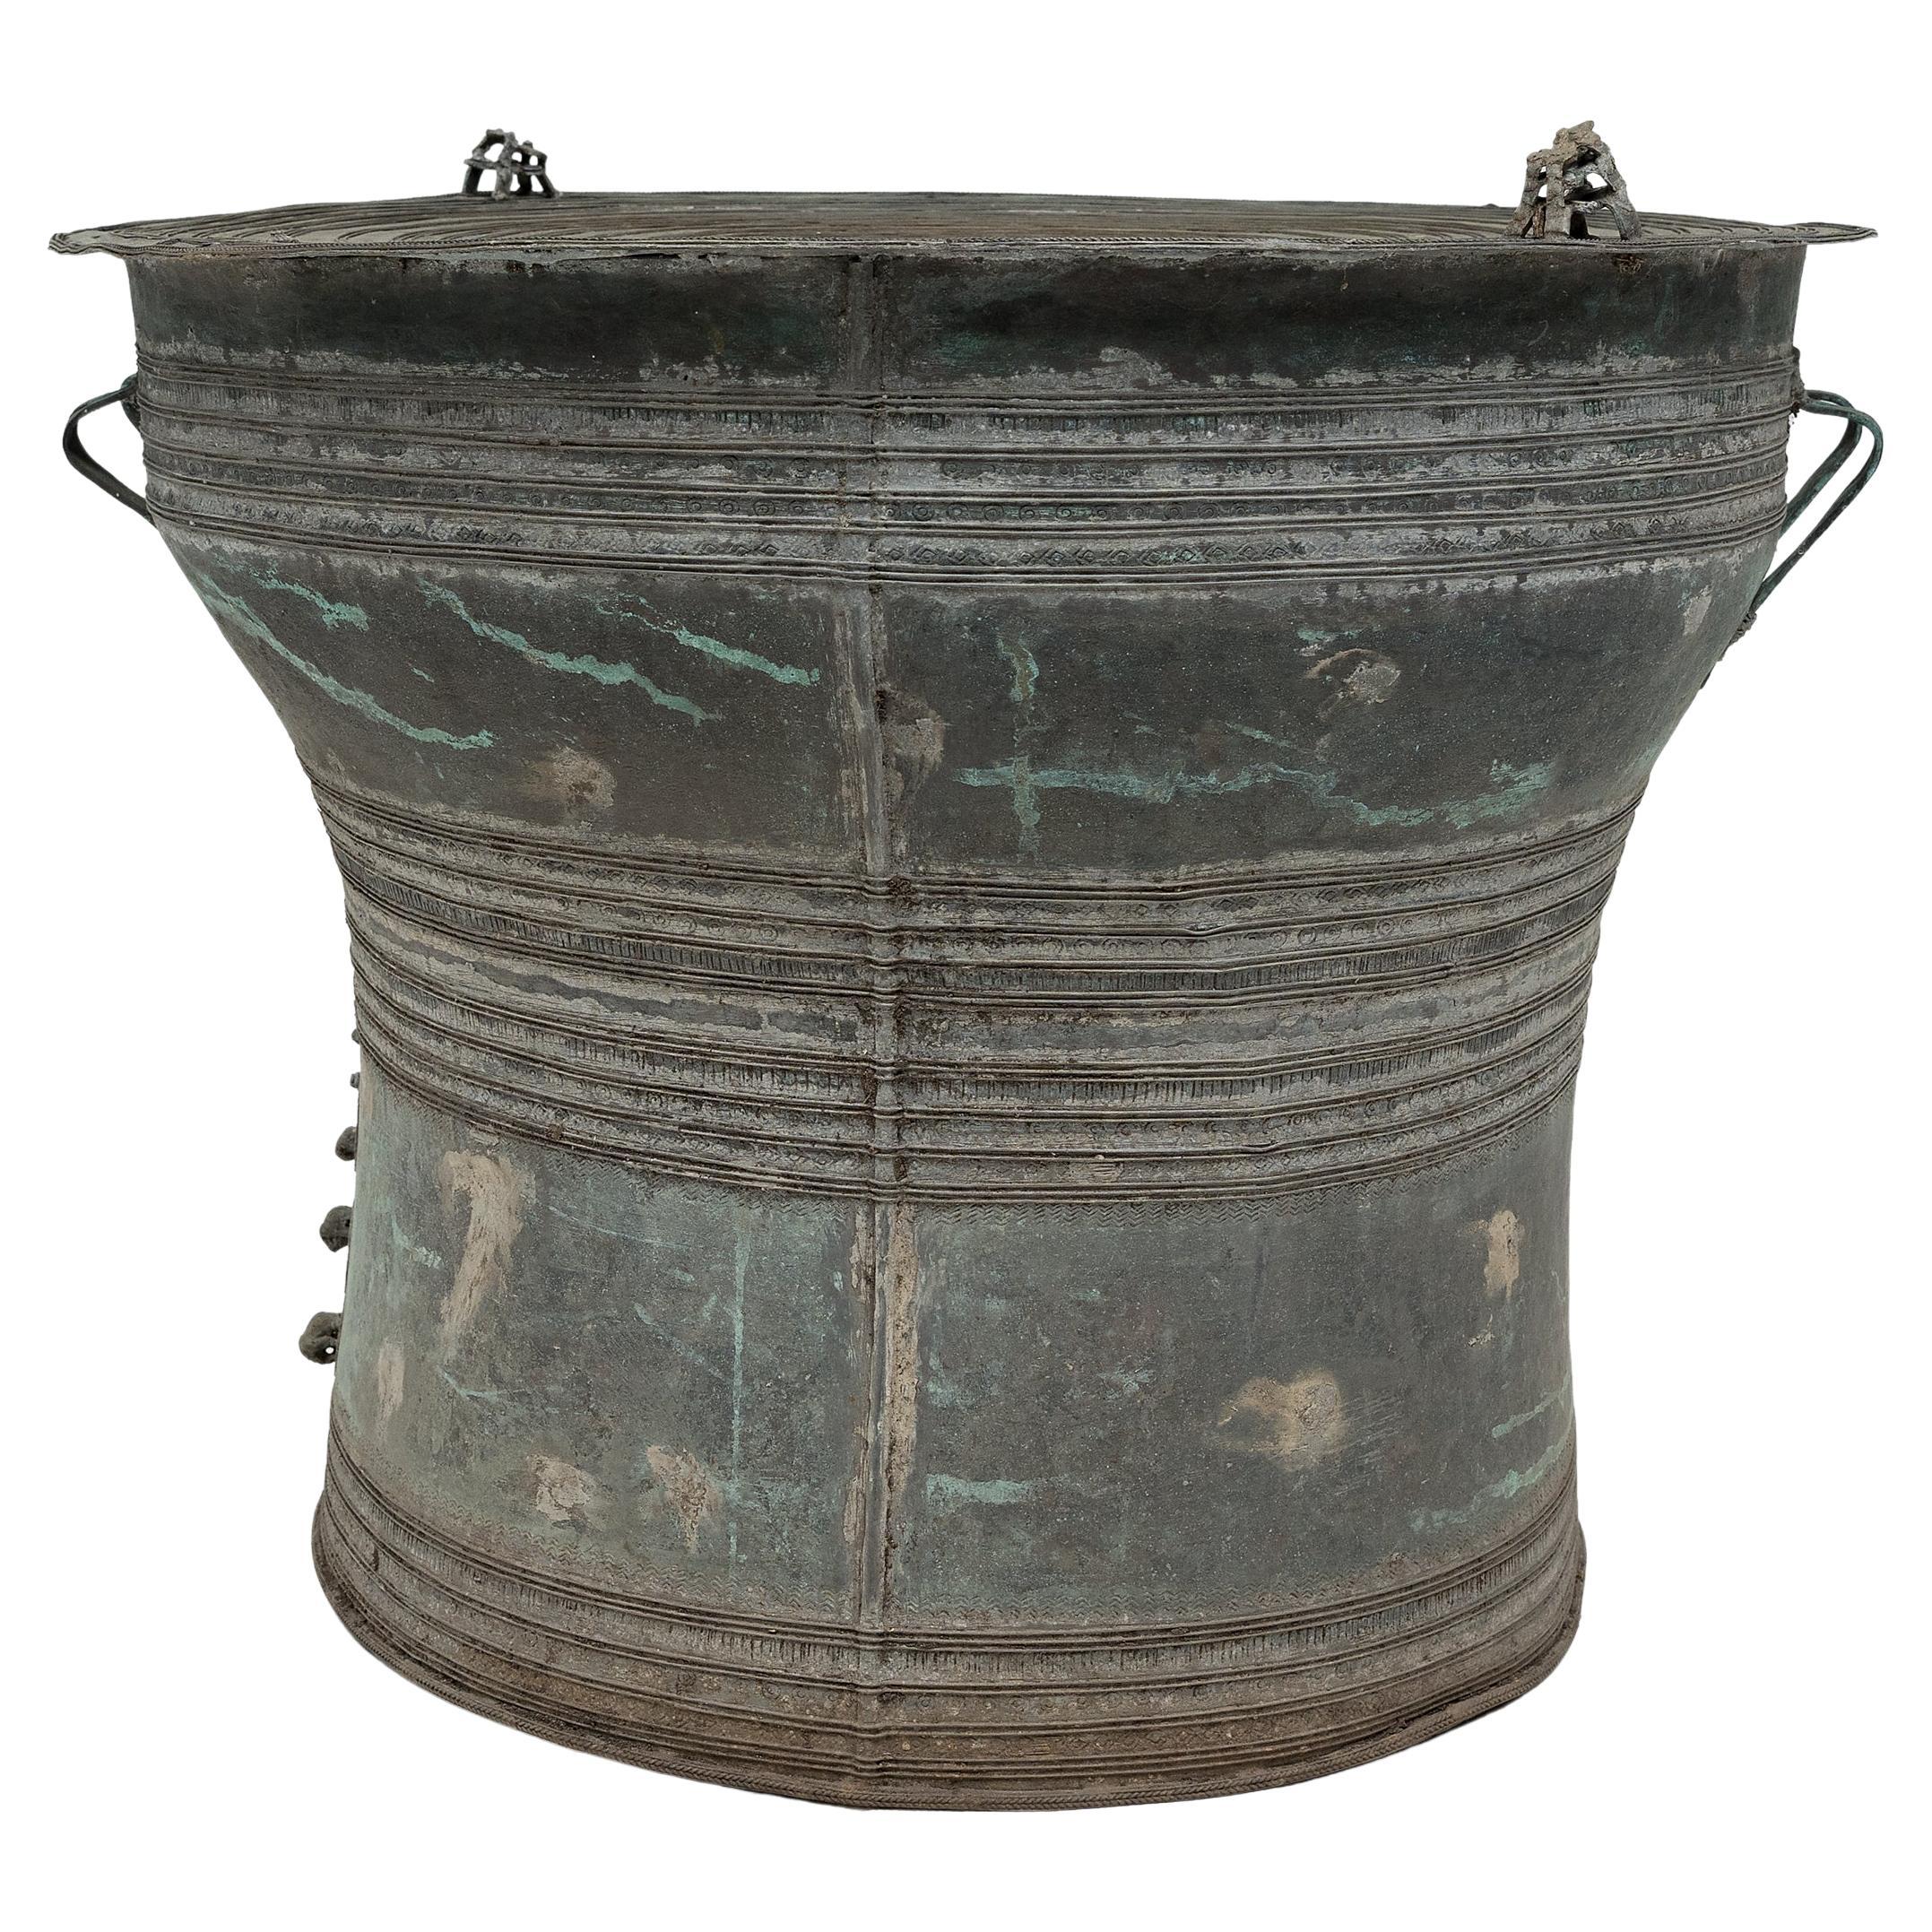 Burmese Bronze Ritual Drum, c. 200 BC